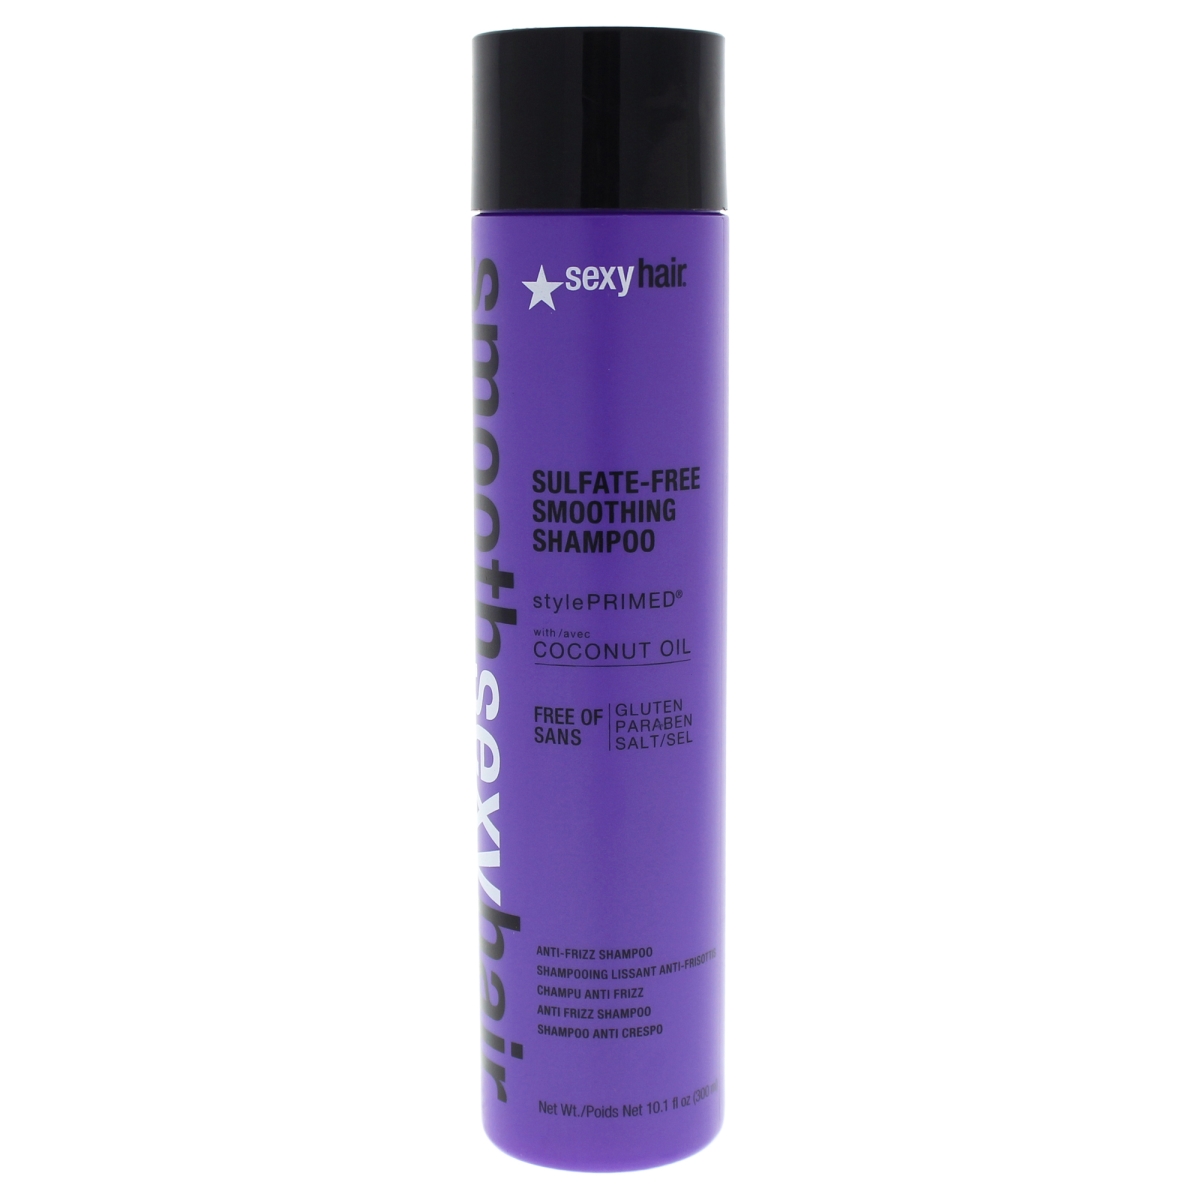 U-hc-12013 10.1 Oz Smooth Sulfate-free Smoothing Shampoo For Unisex